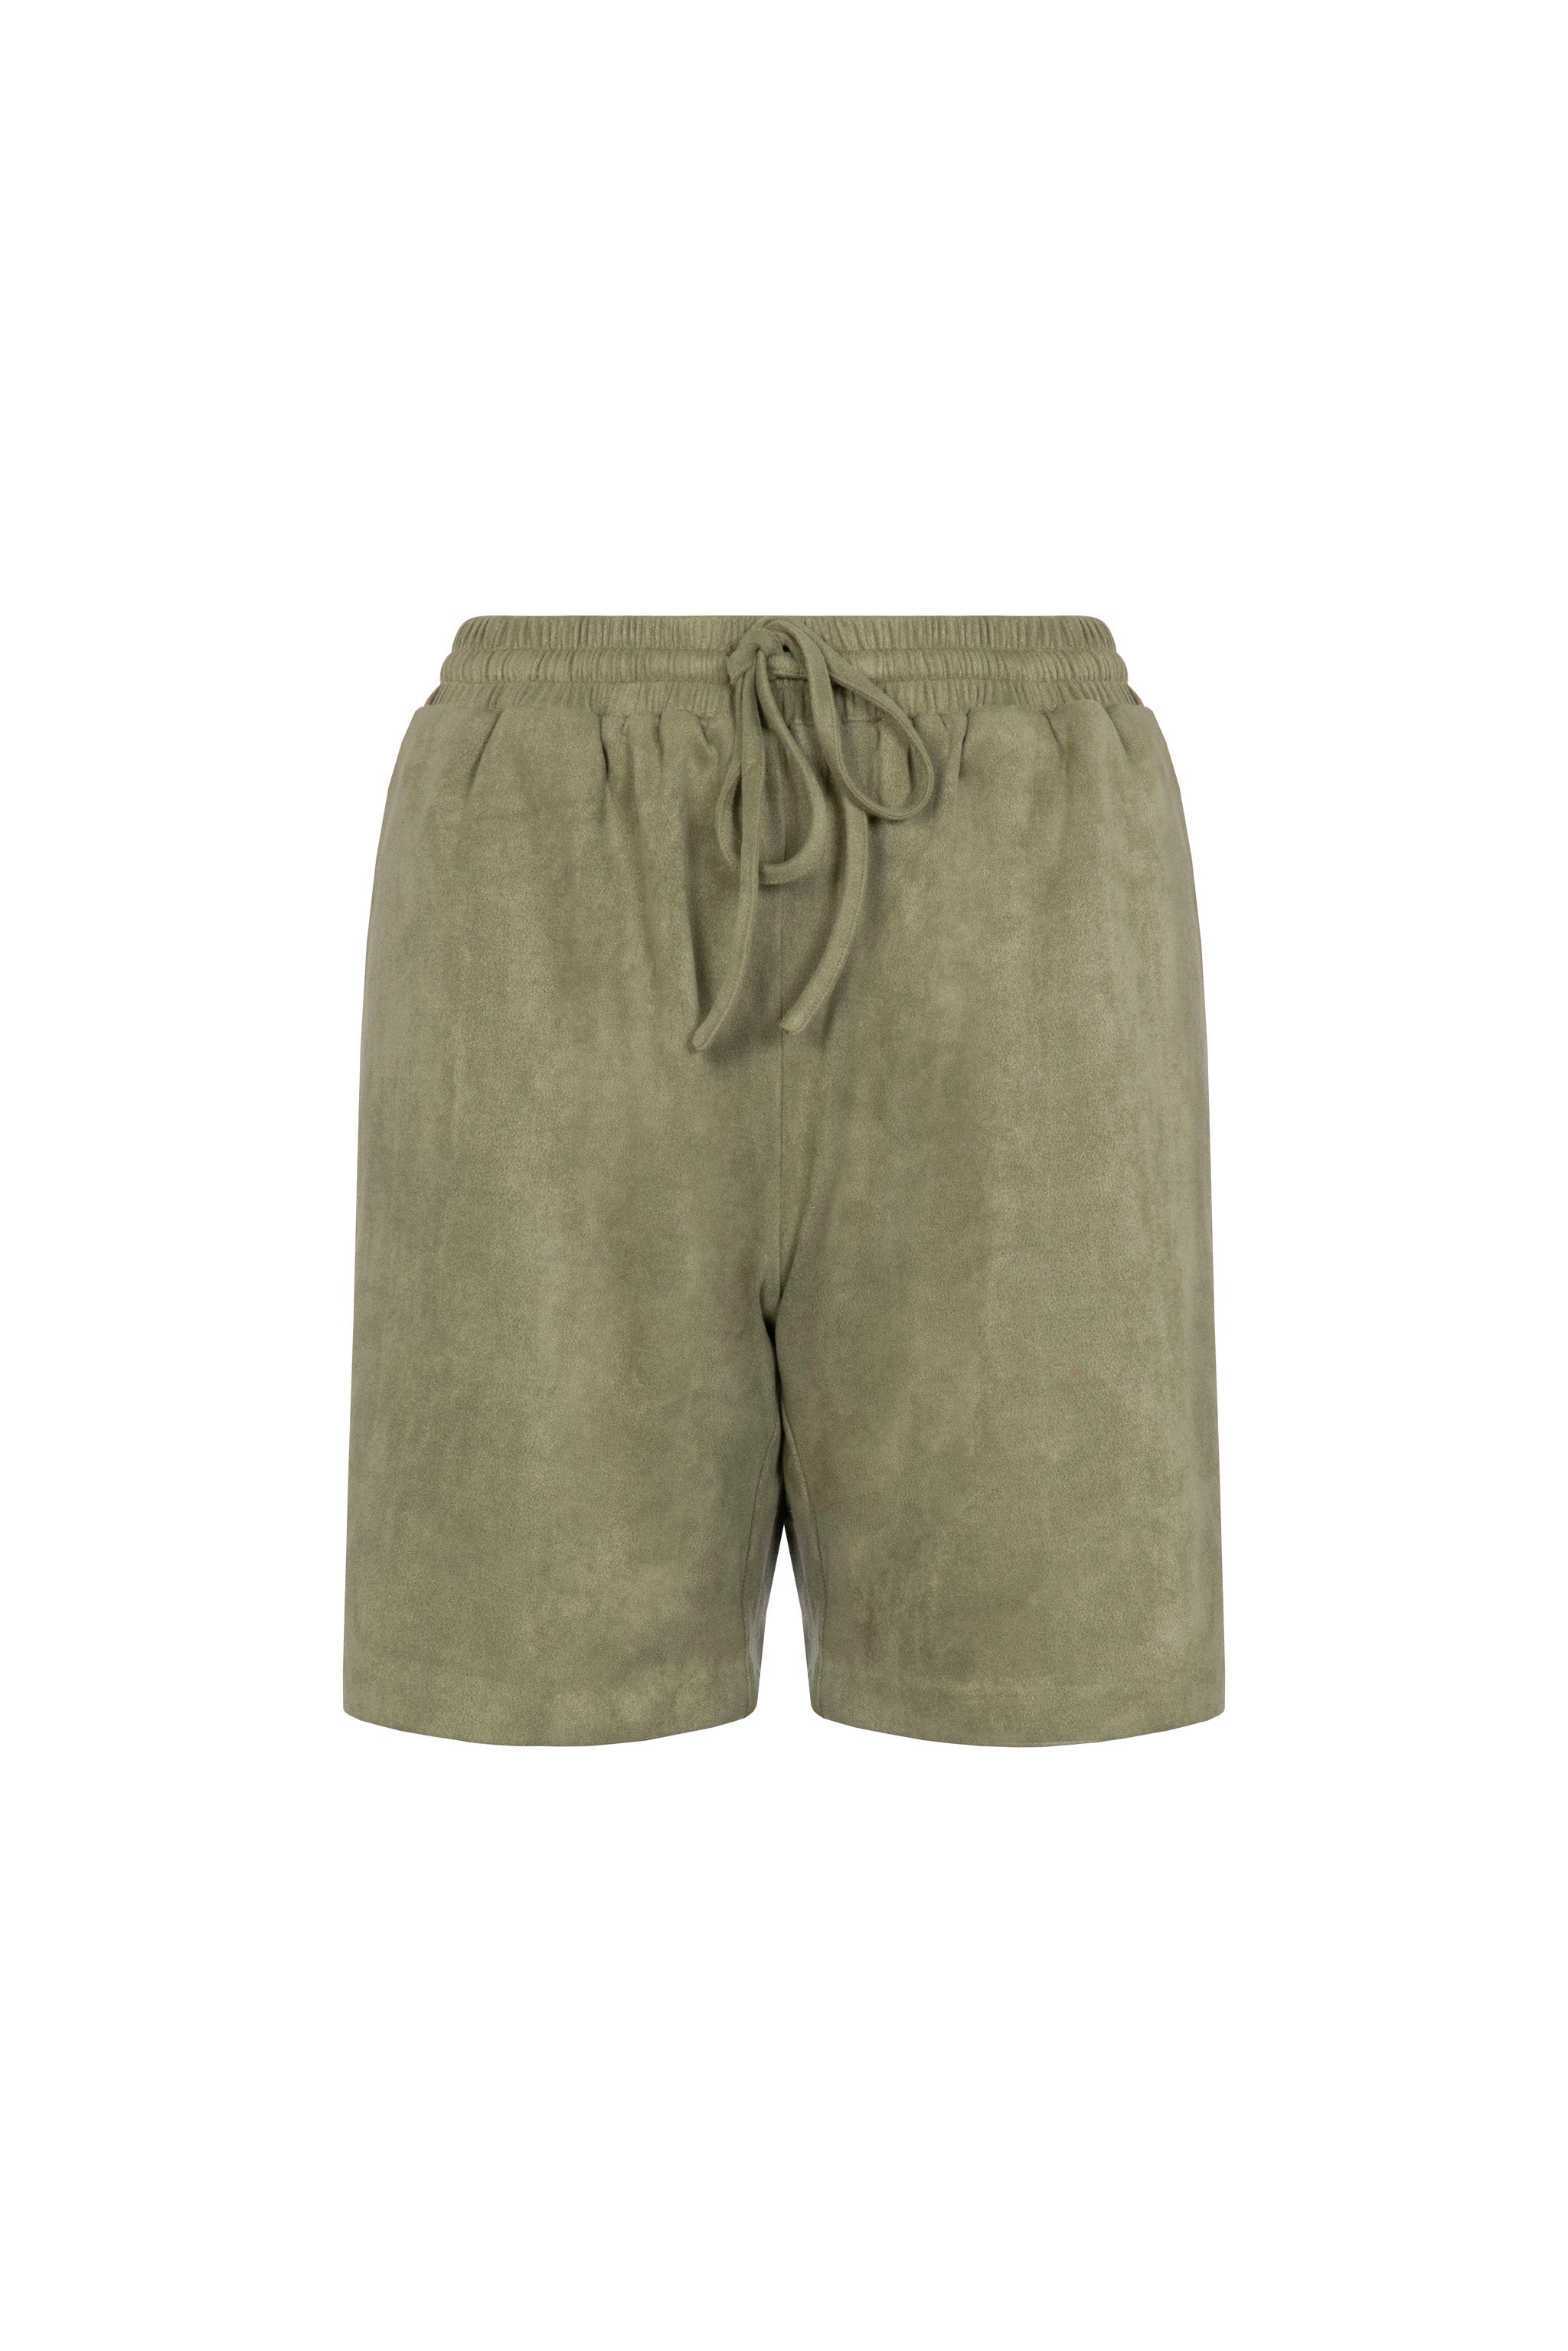 Faux Suede Shorts (Khaki)